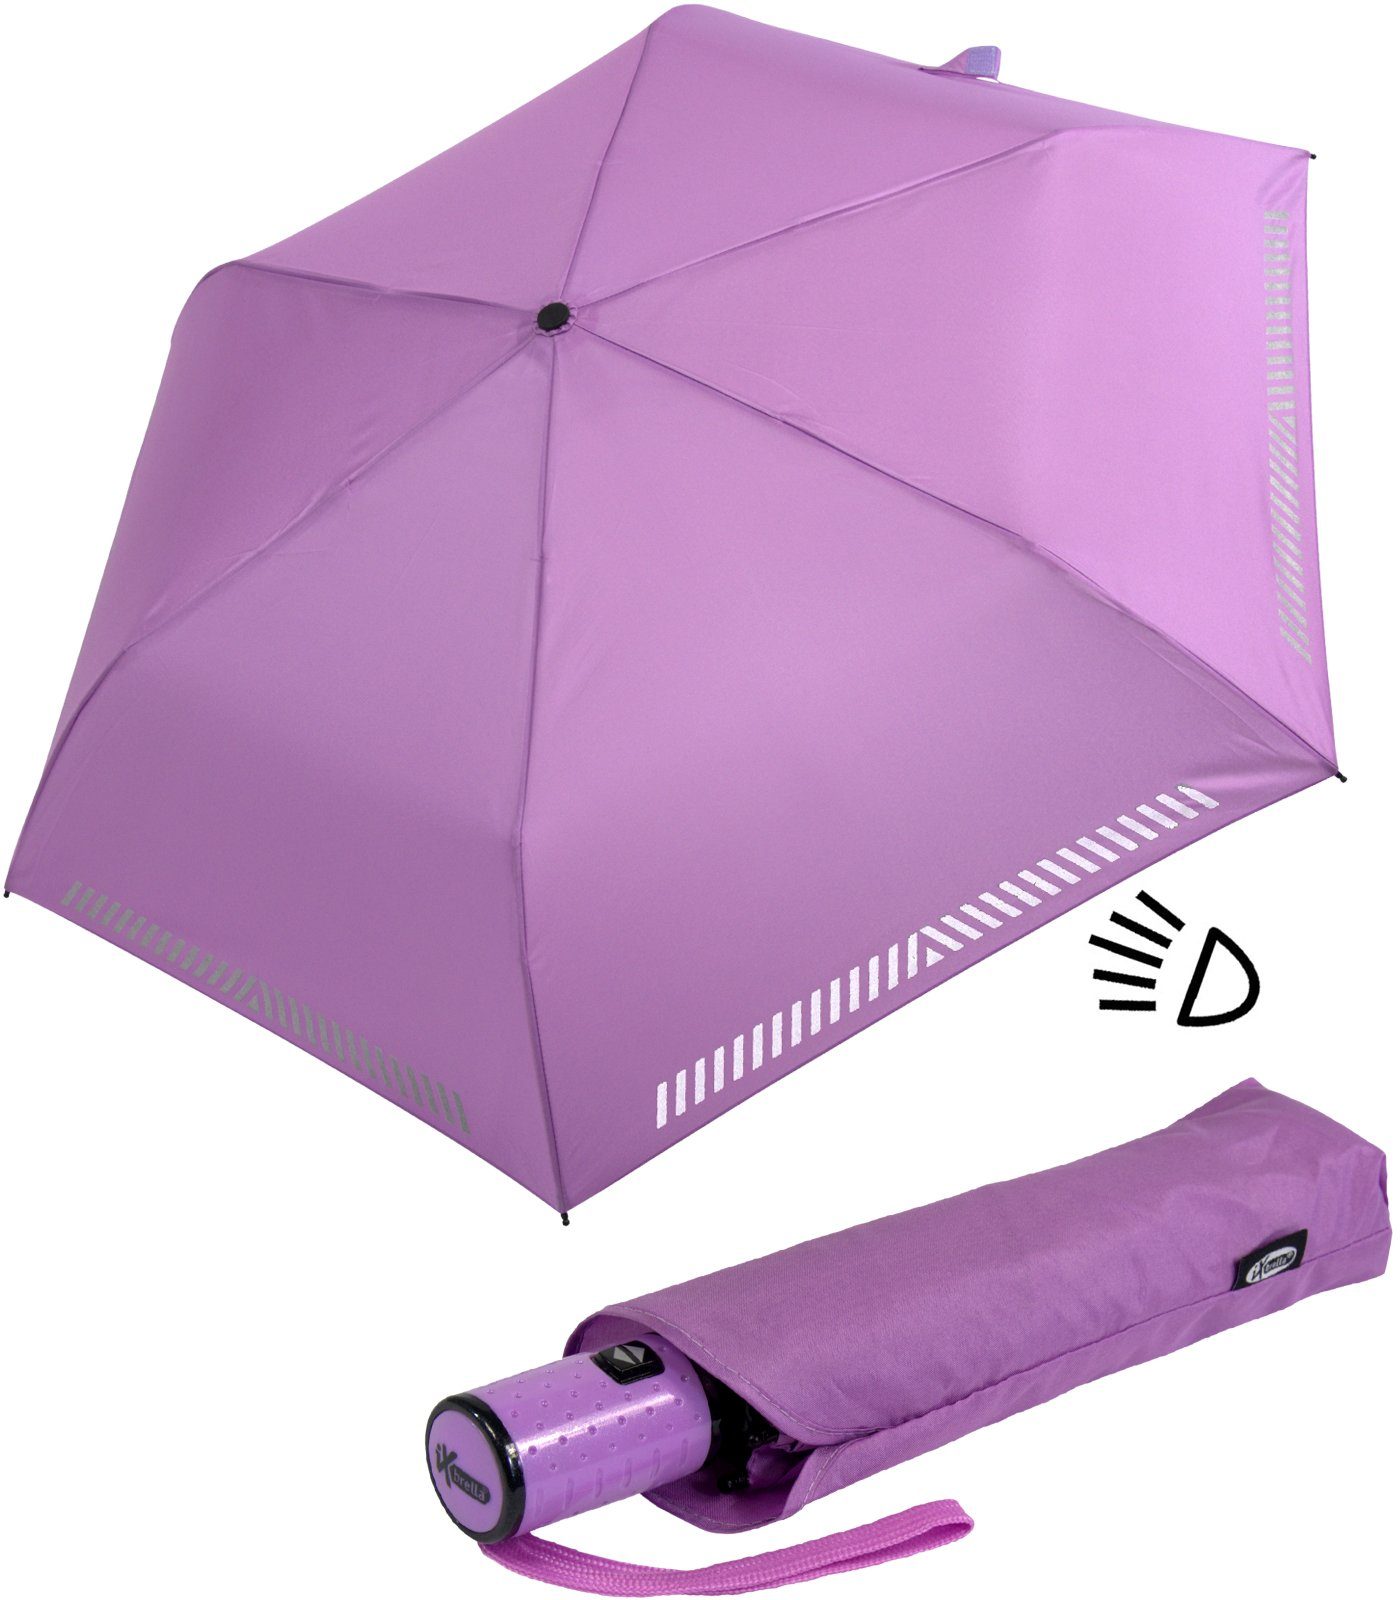 iX-brella Taschenregenschirm Kinderschirm mit Auf-Zu-Automatik, reflektierend, Sicherheit durch Reflex-Streifen - hell-lila | Taschenschirme